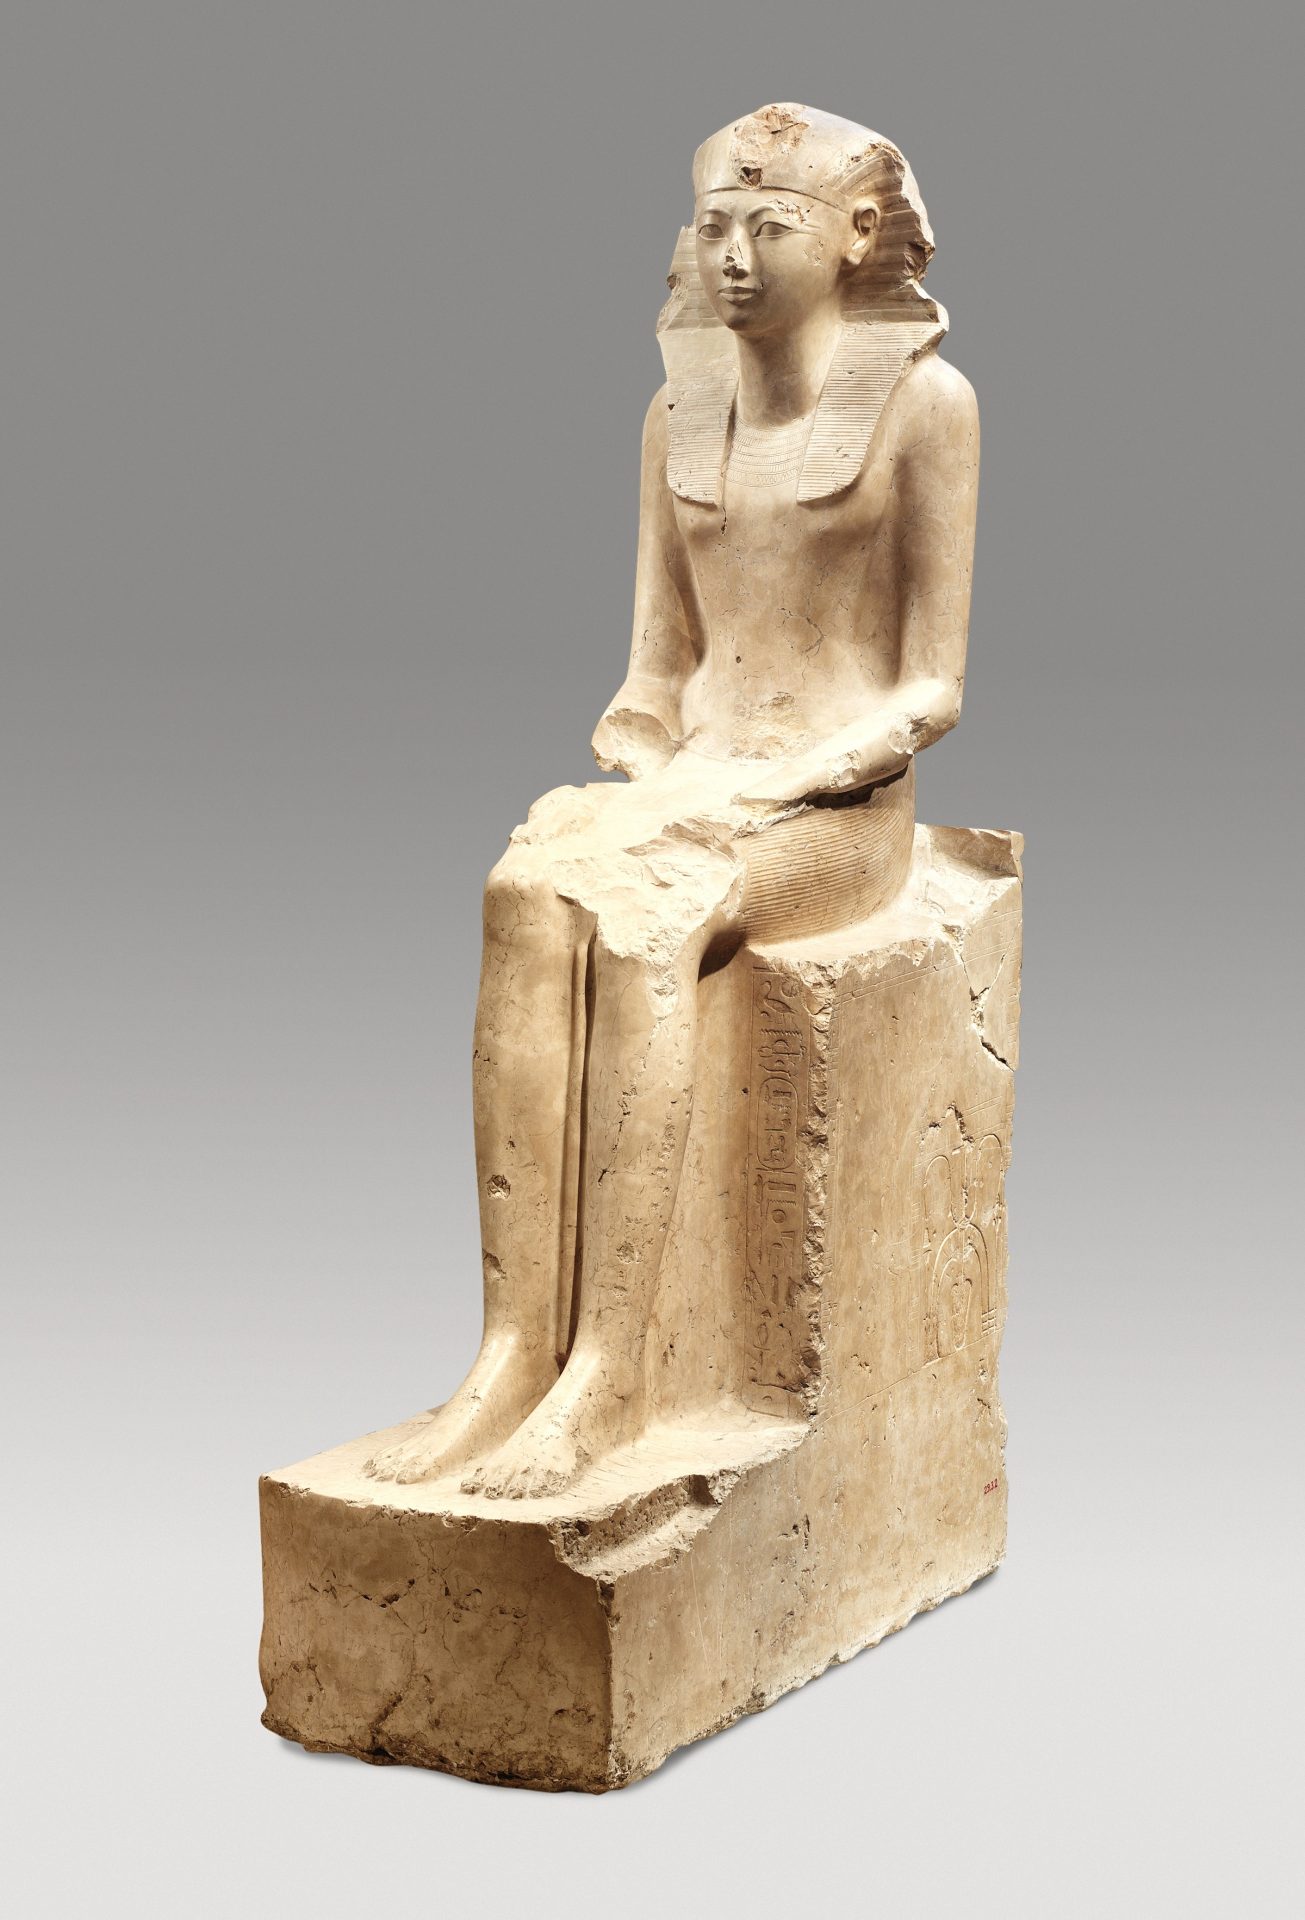 古埃及第十八王朝女法老 Hatshepsut 雕像，约公元前1479-前1458年，大都会艺术博物馆